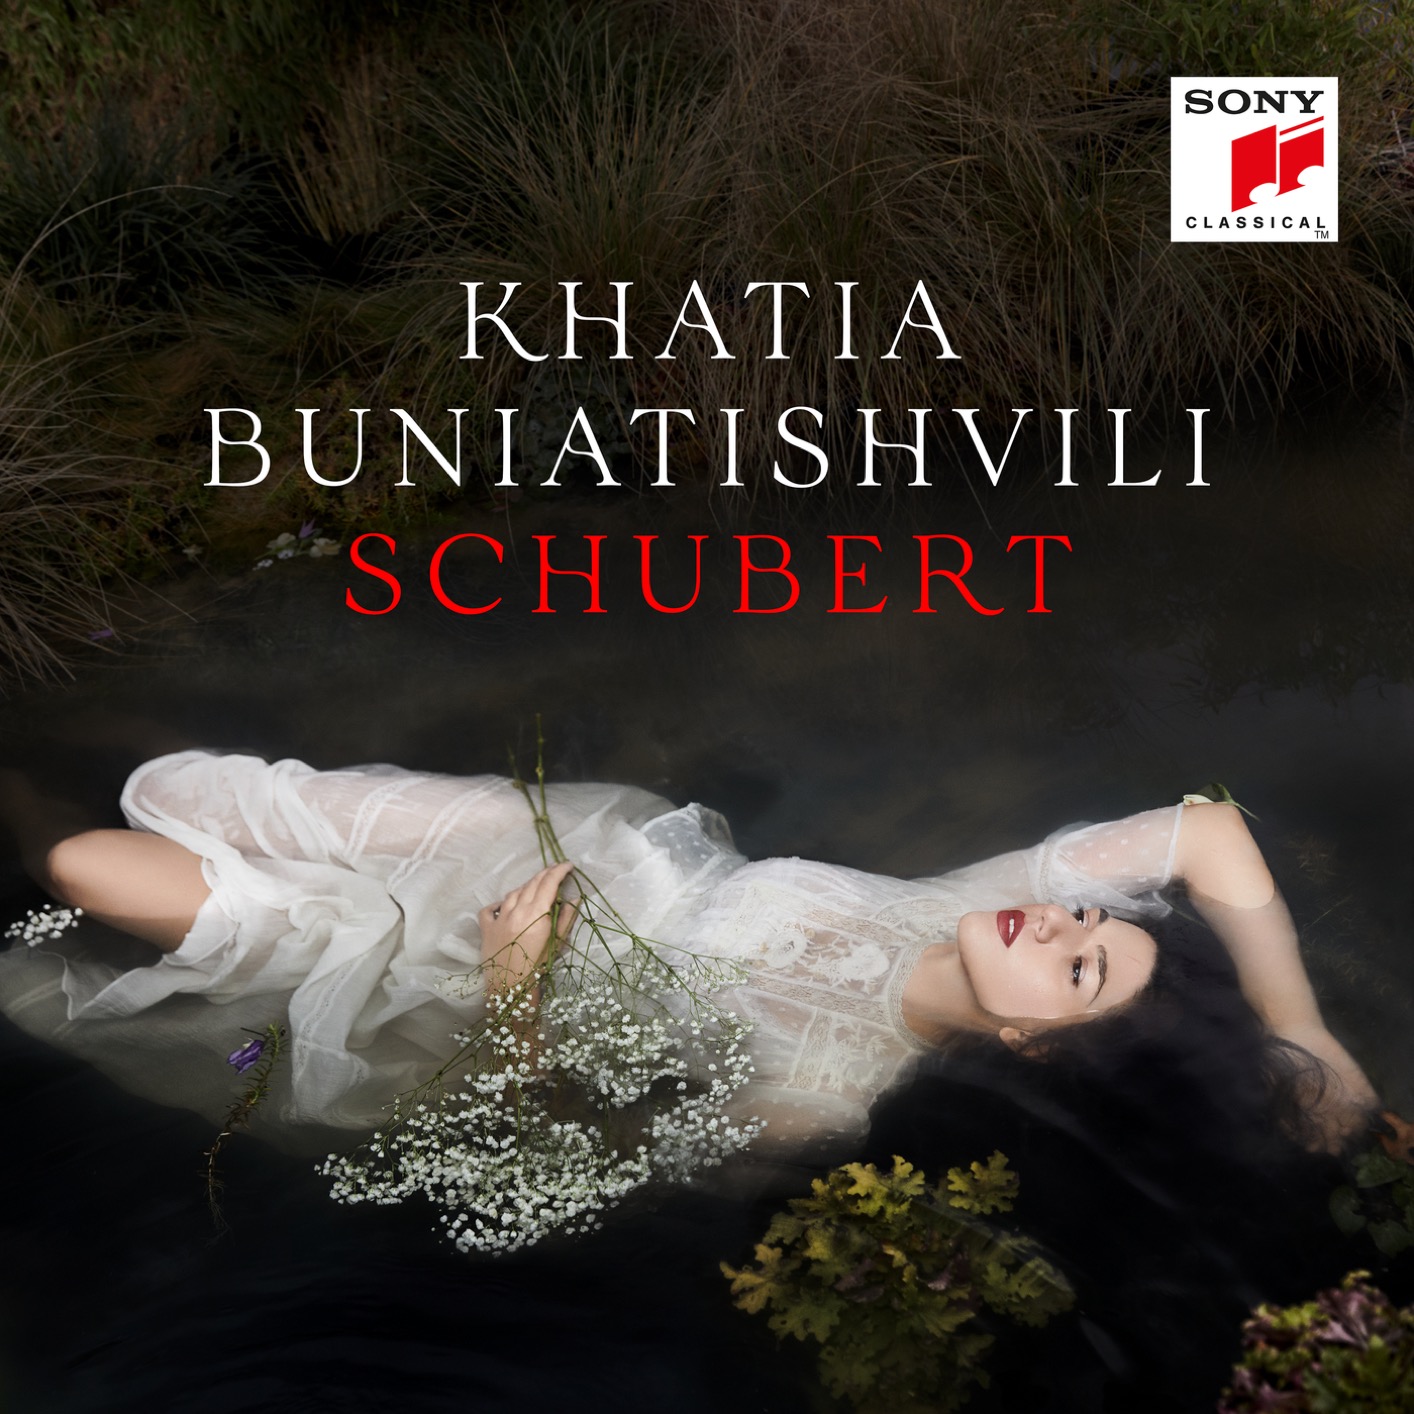 Khatia Buniatishvili - Schubert (2019) [FLAC 24bit/96kHz]